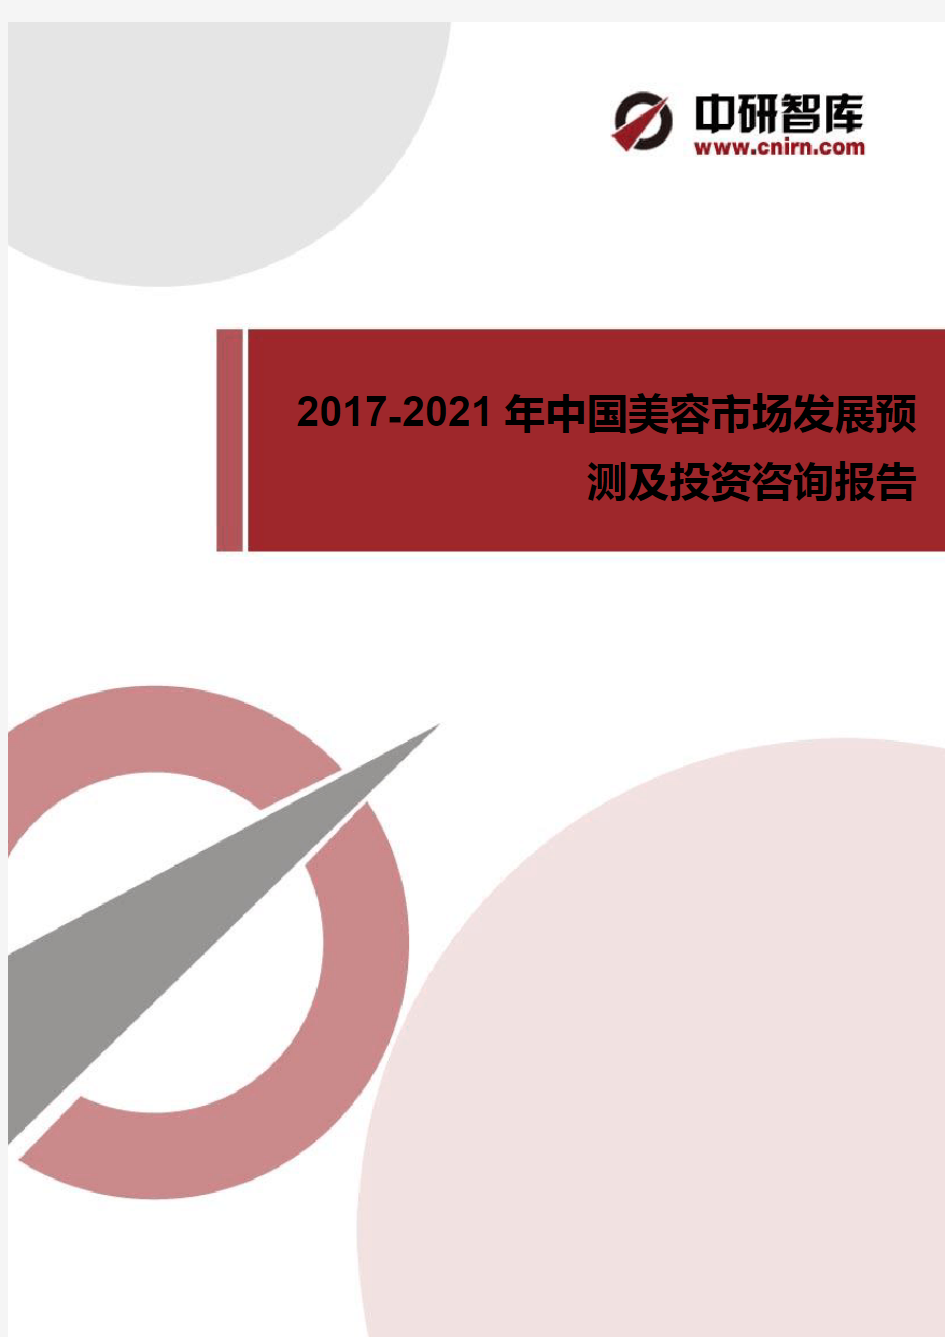 2017-2022年中国美容市场需求分析及发展趋势预测